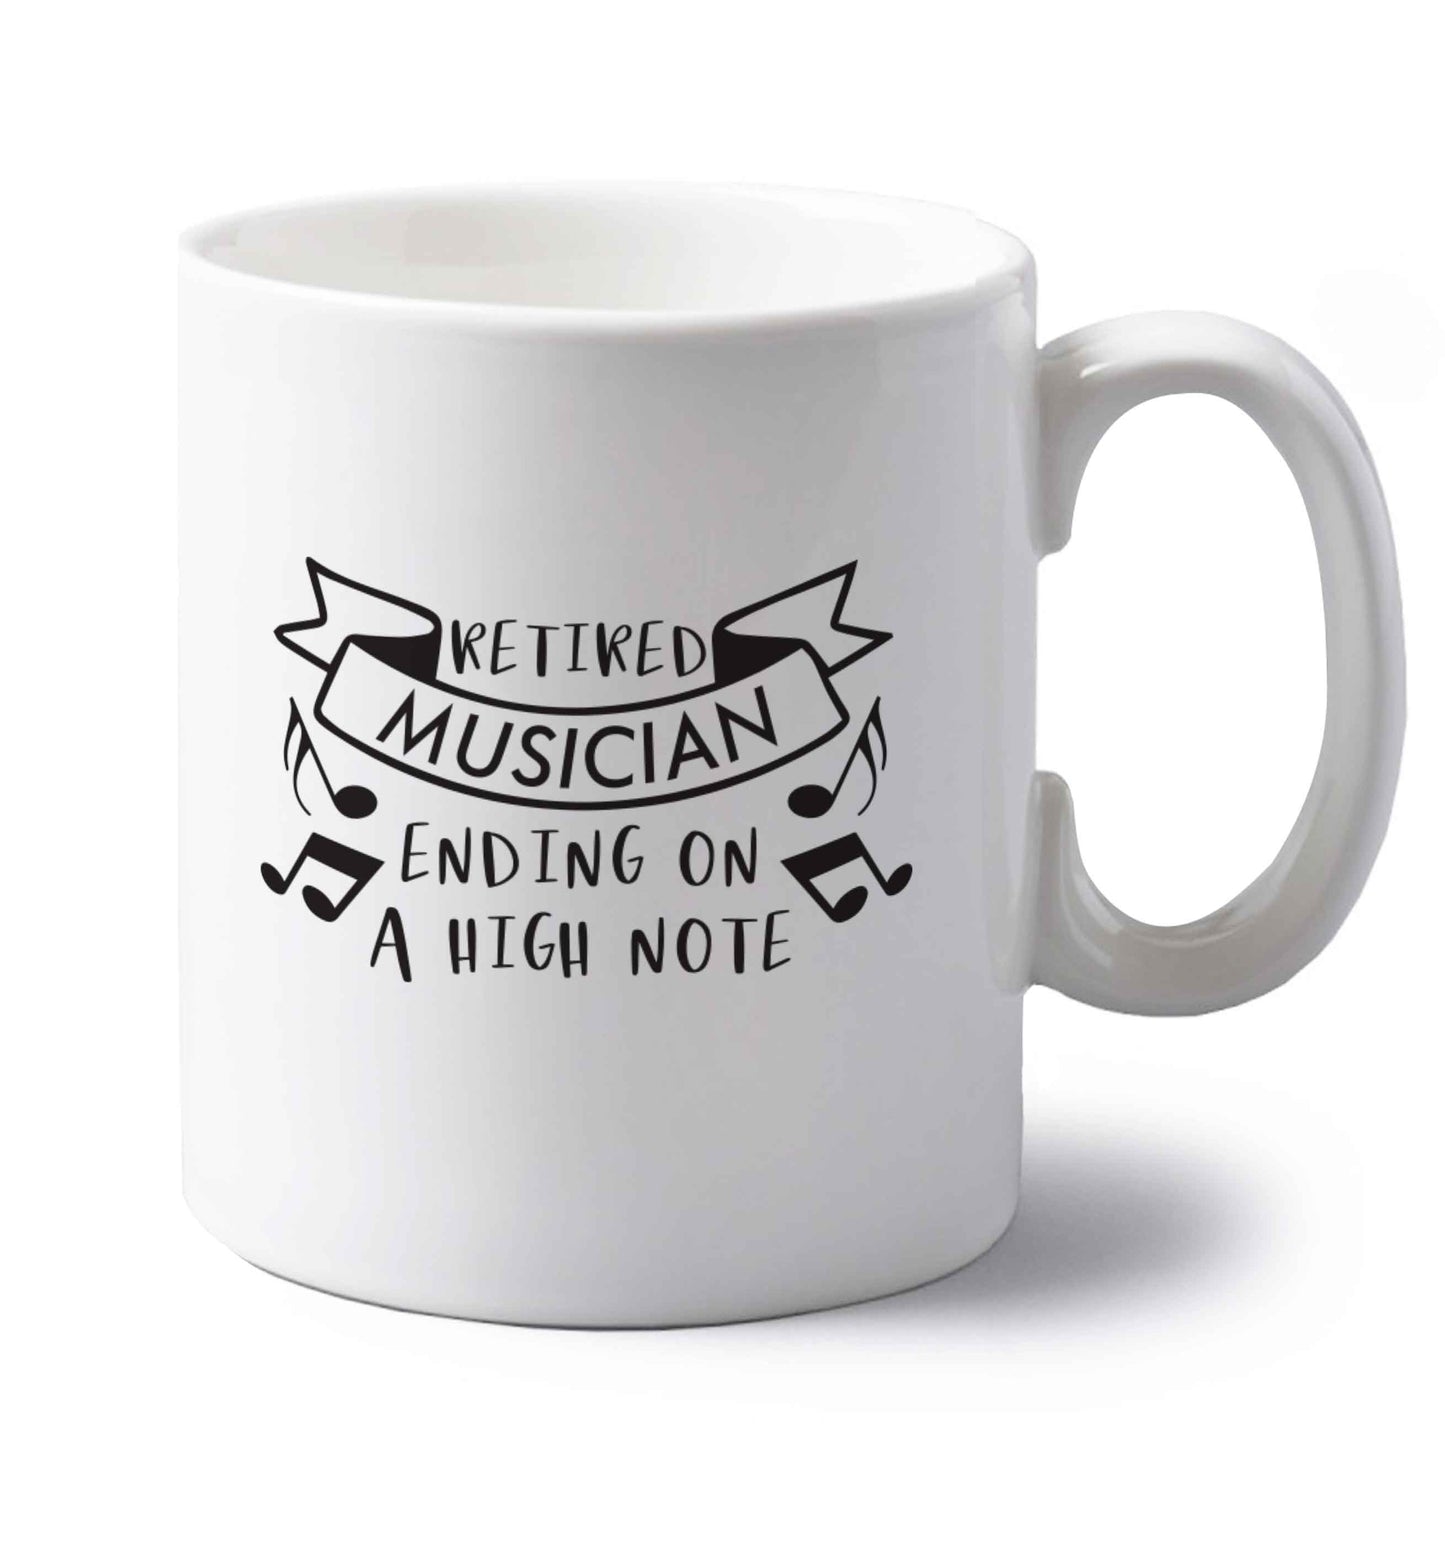 Retired musician ending on a high note left handed white ceramic mug 